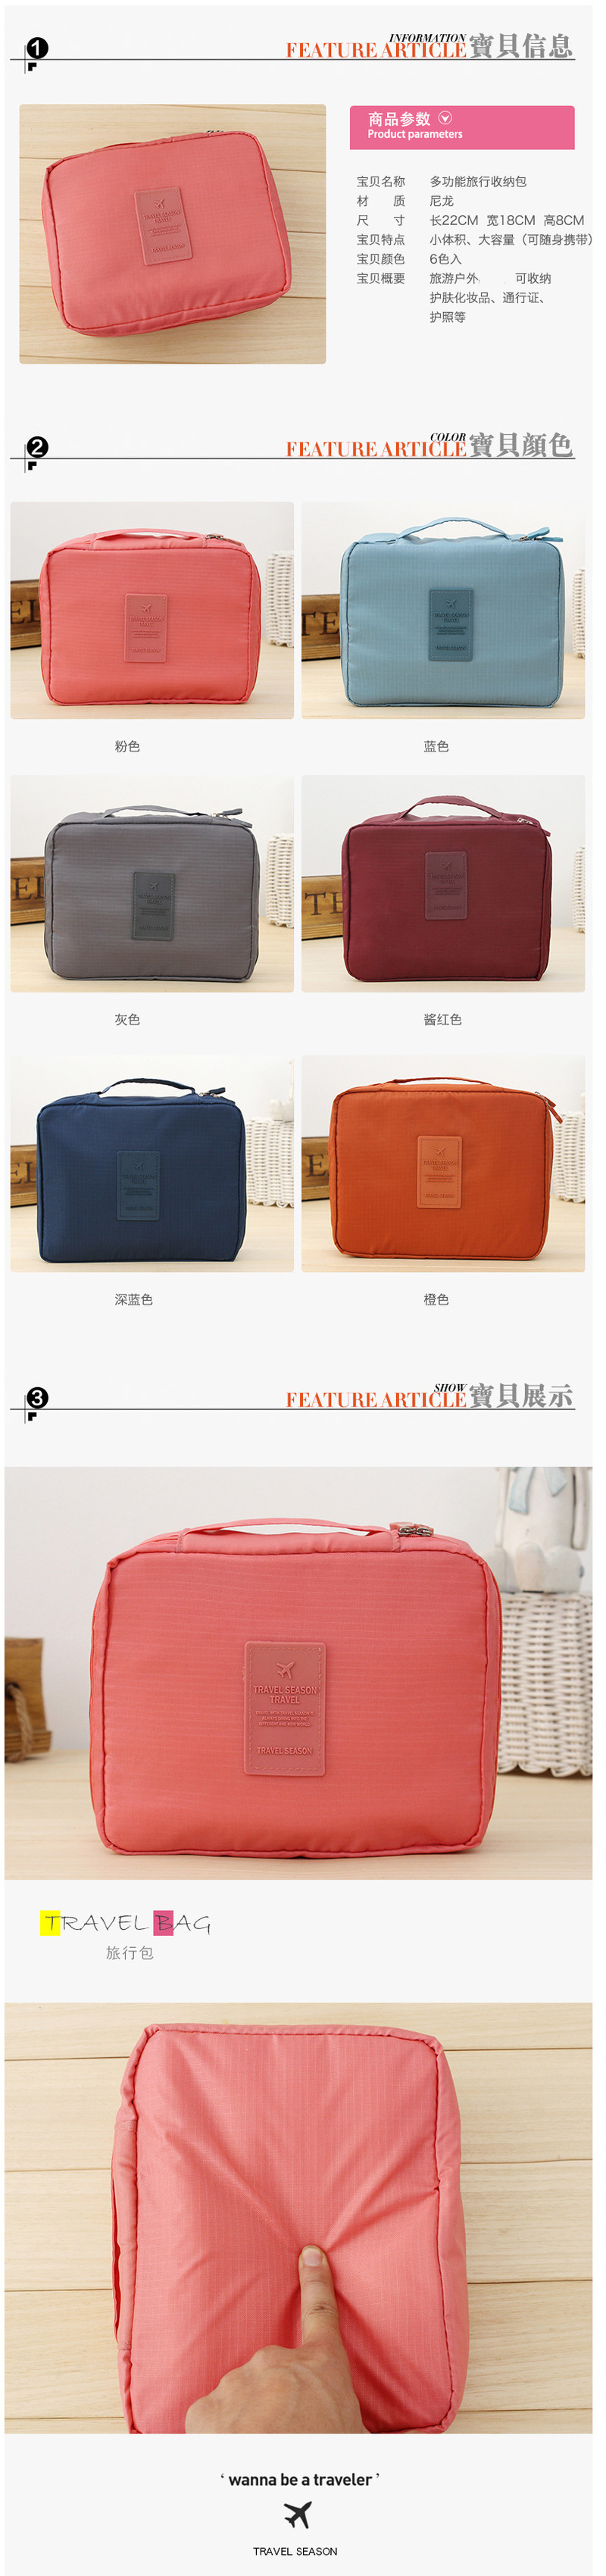 韩版方形旅行多功能内衣收纳包 旅行包 便携洗漱包